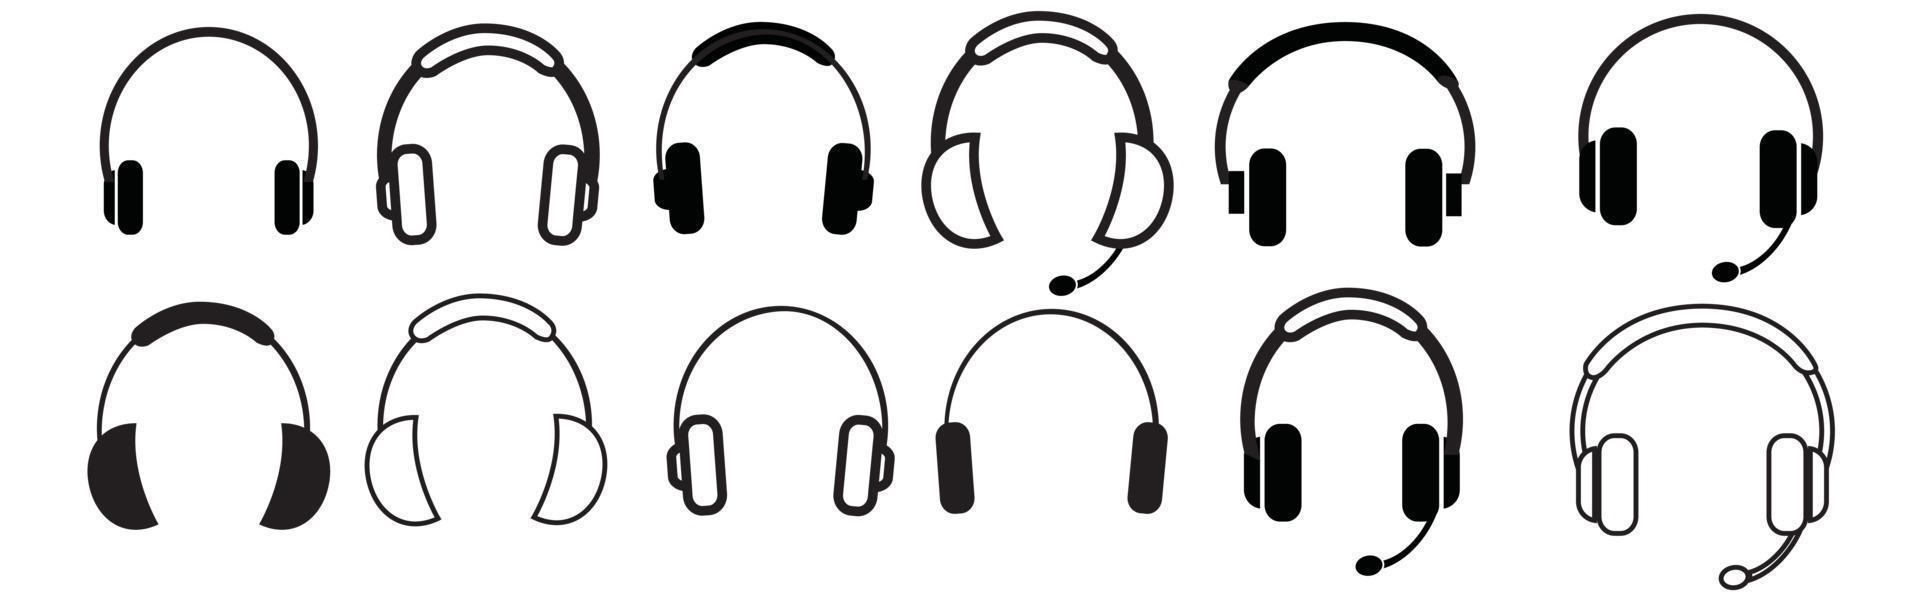 Kopfhörer-Symbole gesetzt. Vektor-Illustration vektor